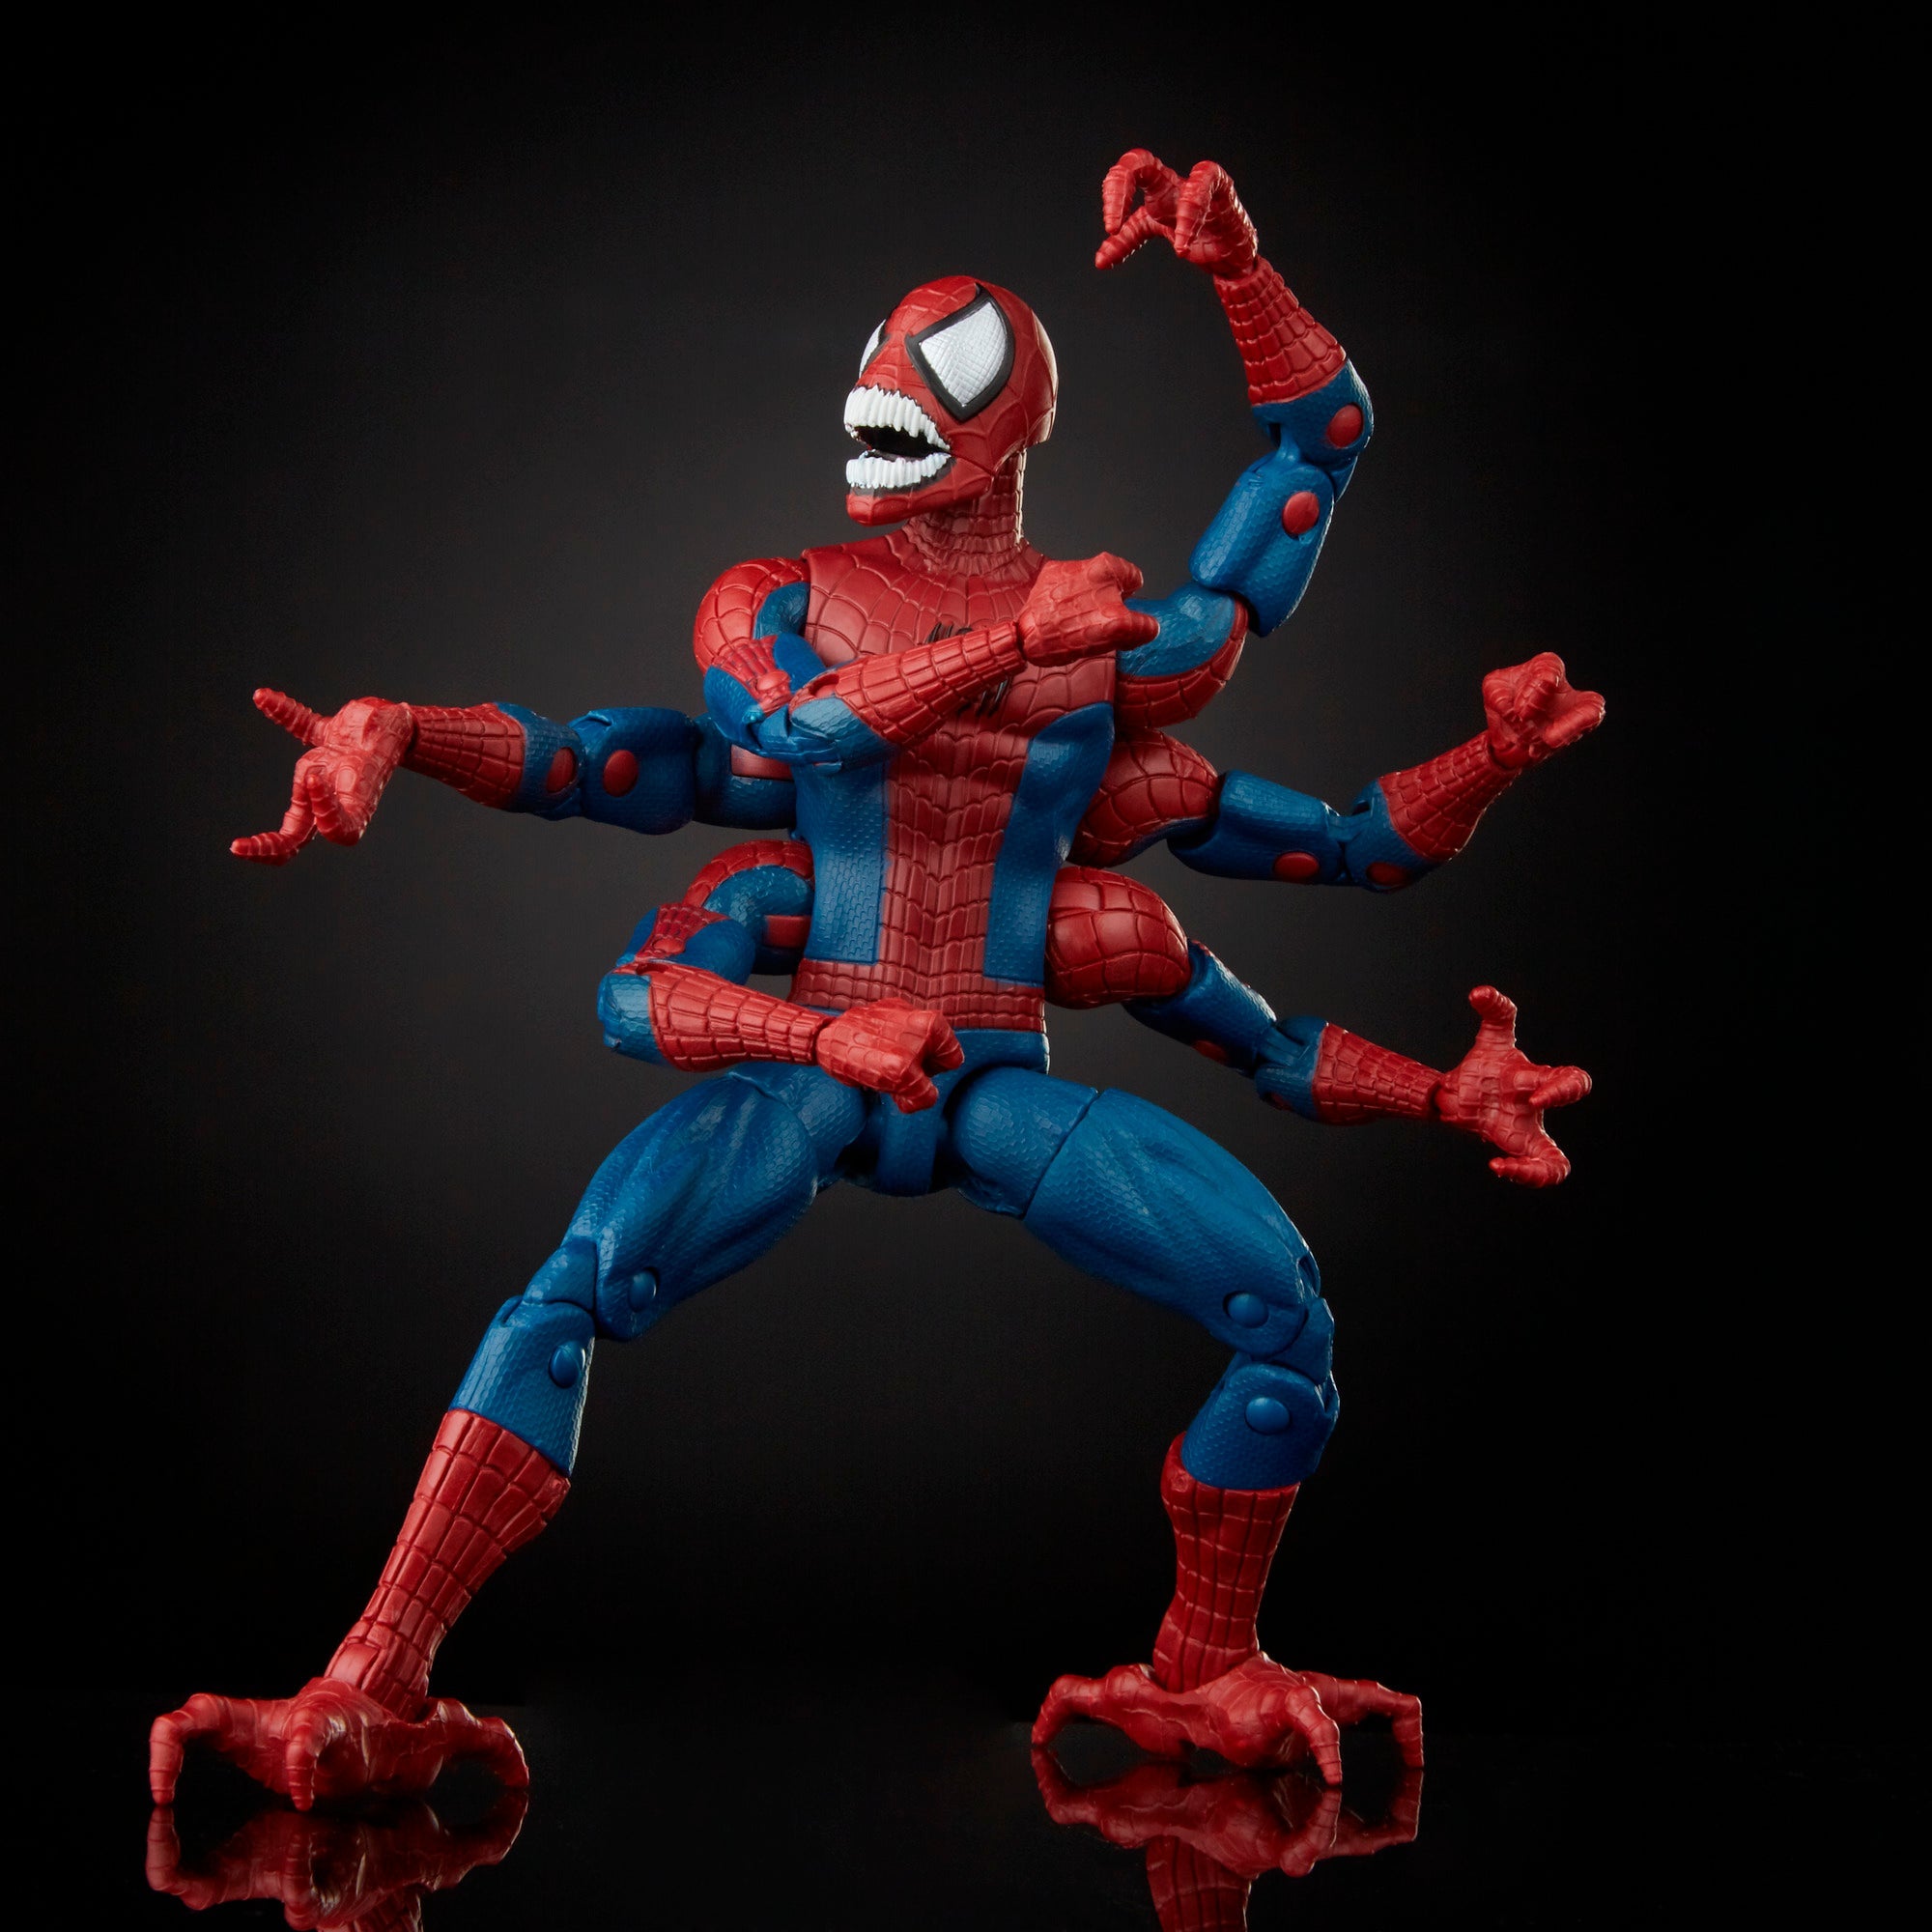 Spider-Man Marvel Legends Series Demogoblin Spider-Man Figure